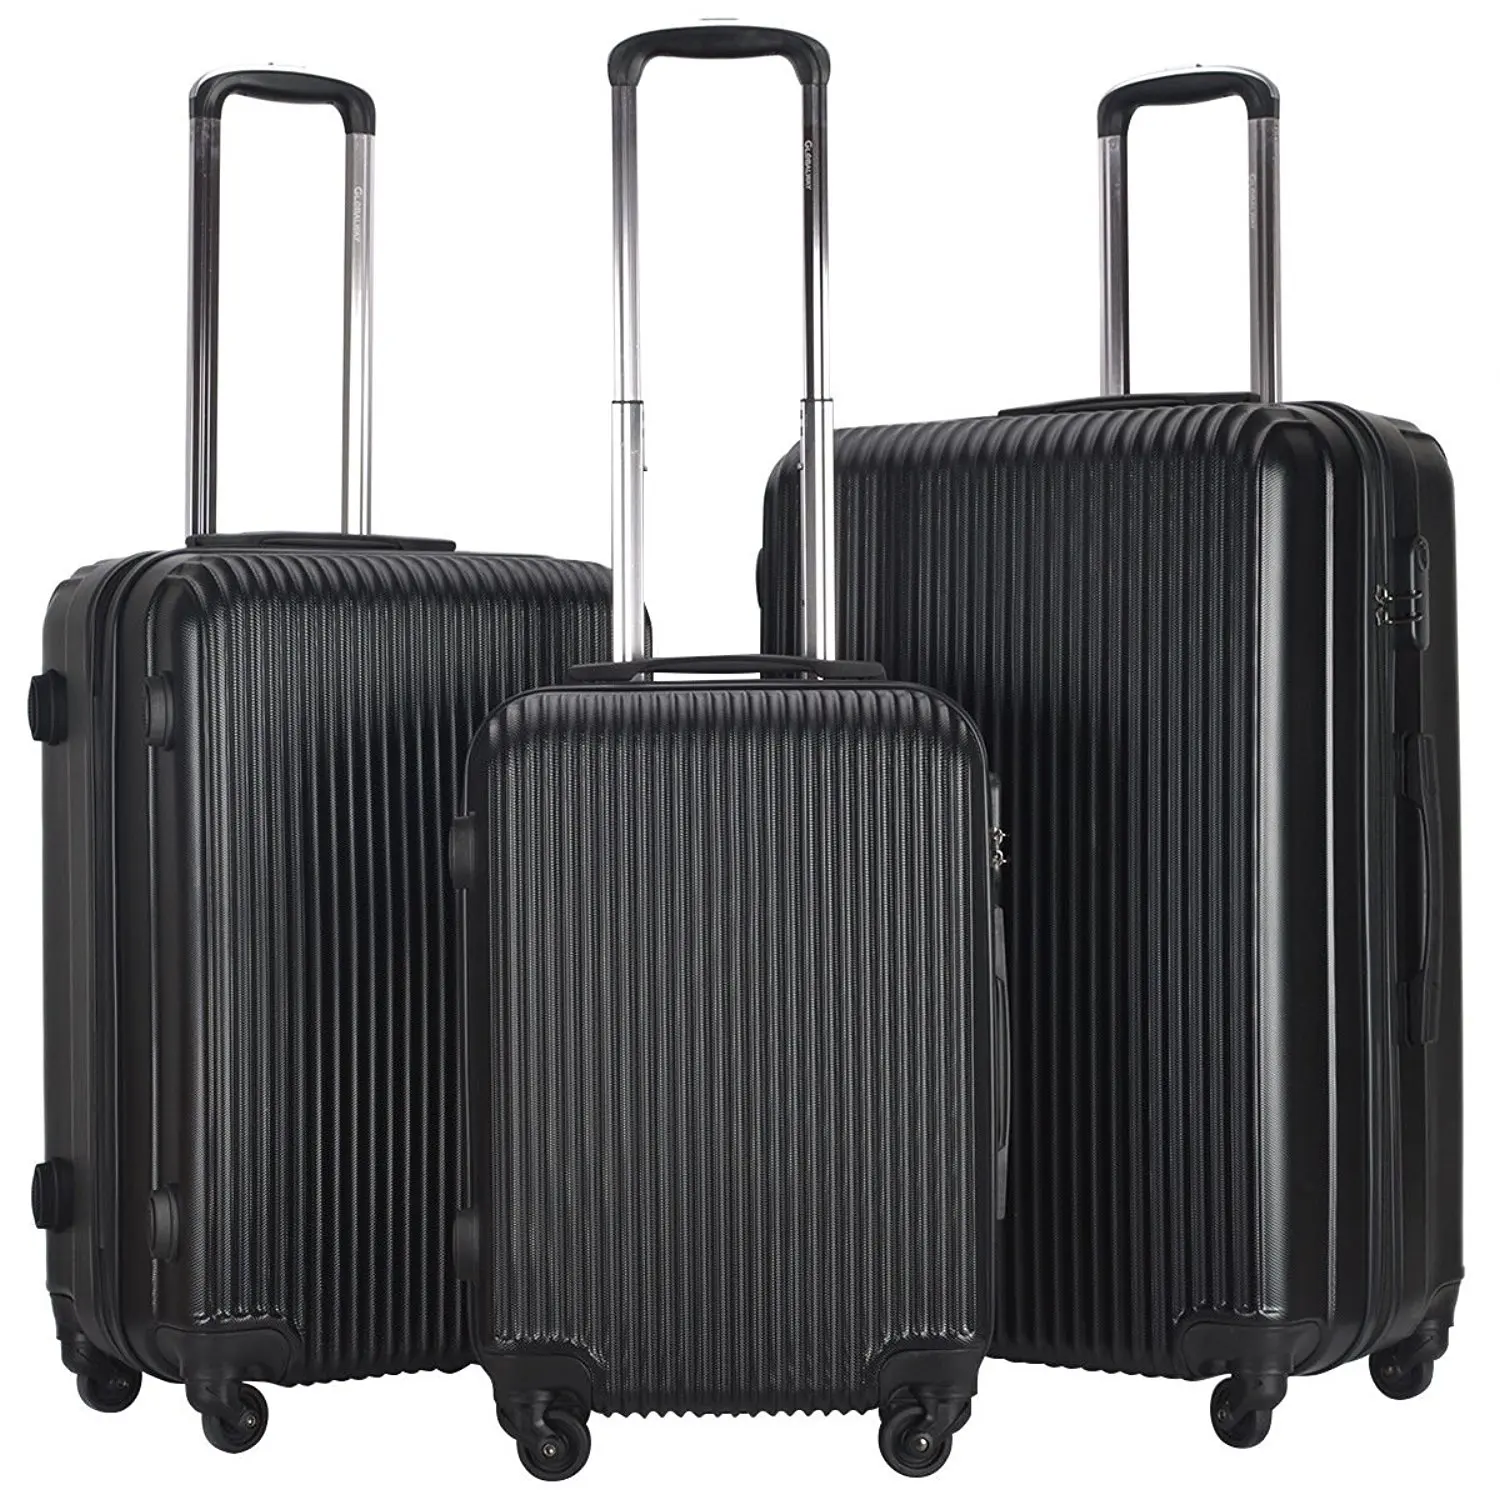 Buy Goplus 3 Pcs Luggage Set Hardside Travel Rolling Suitcase ABS ...